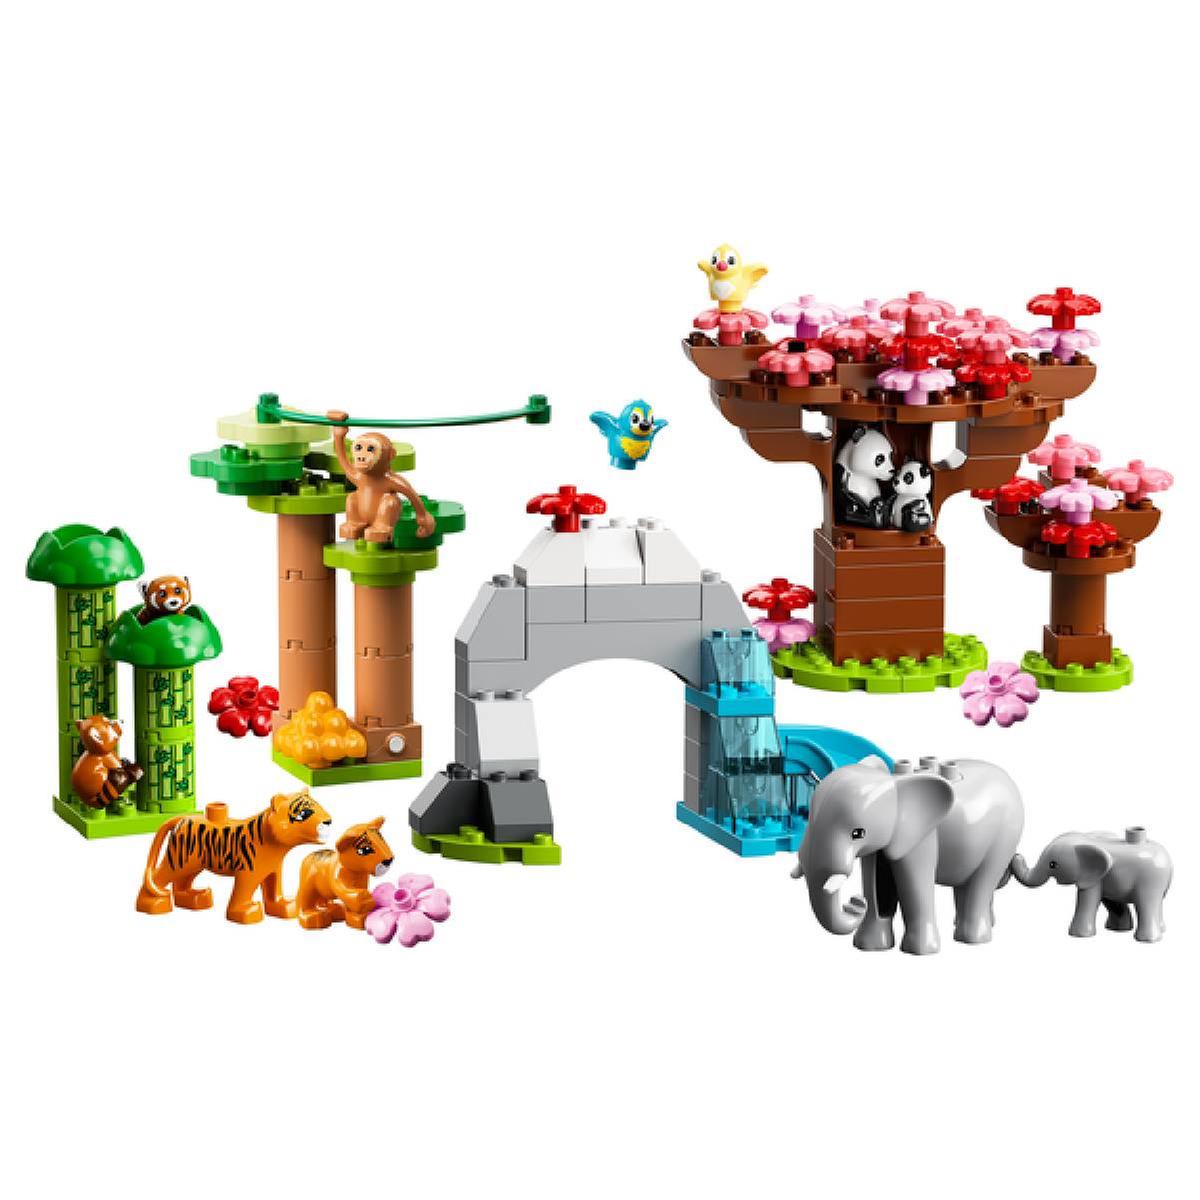 LEGO Duplo - Fauna Salvaje del Mundo (10975) desde 115,80 €